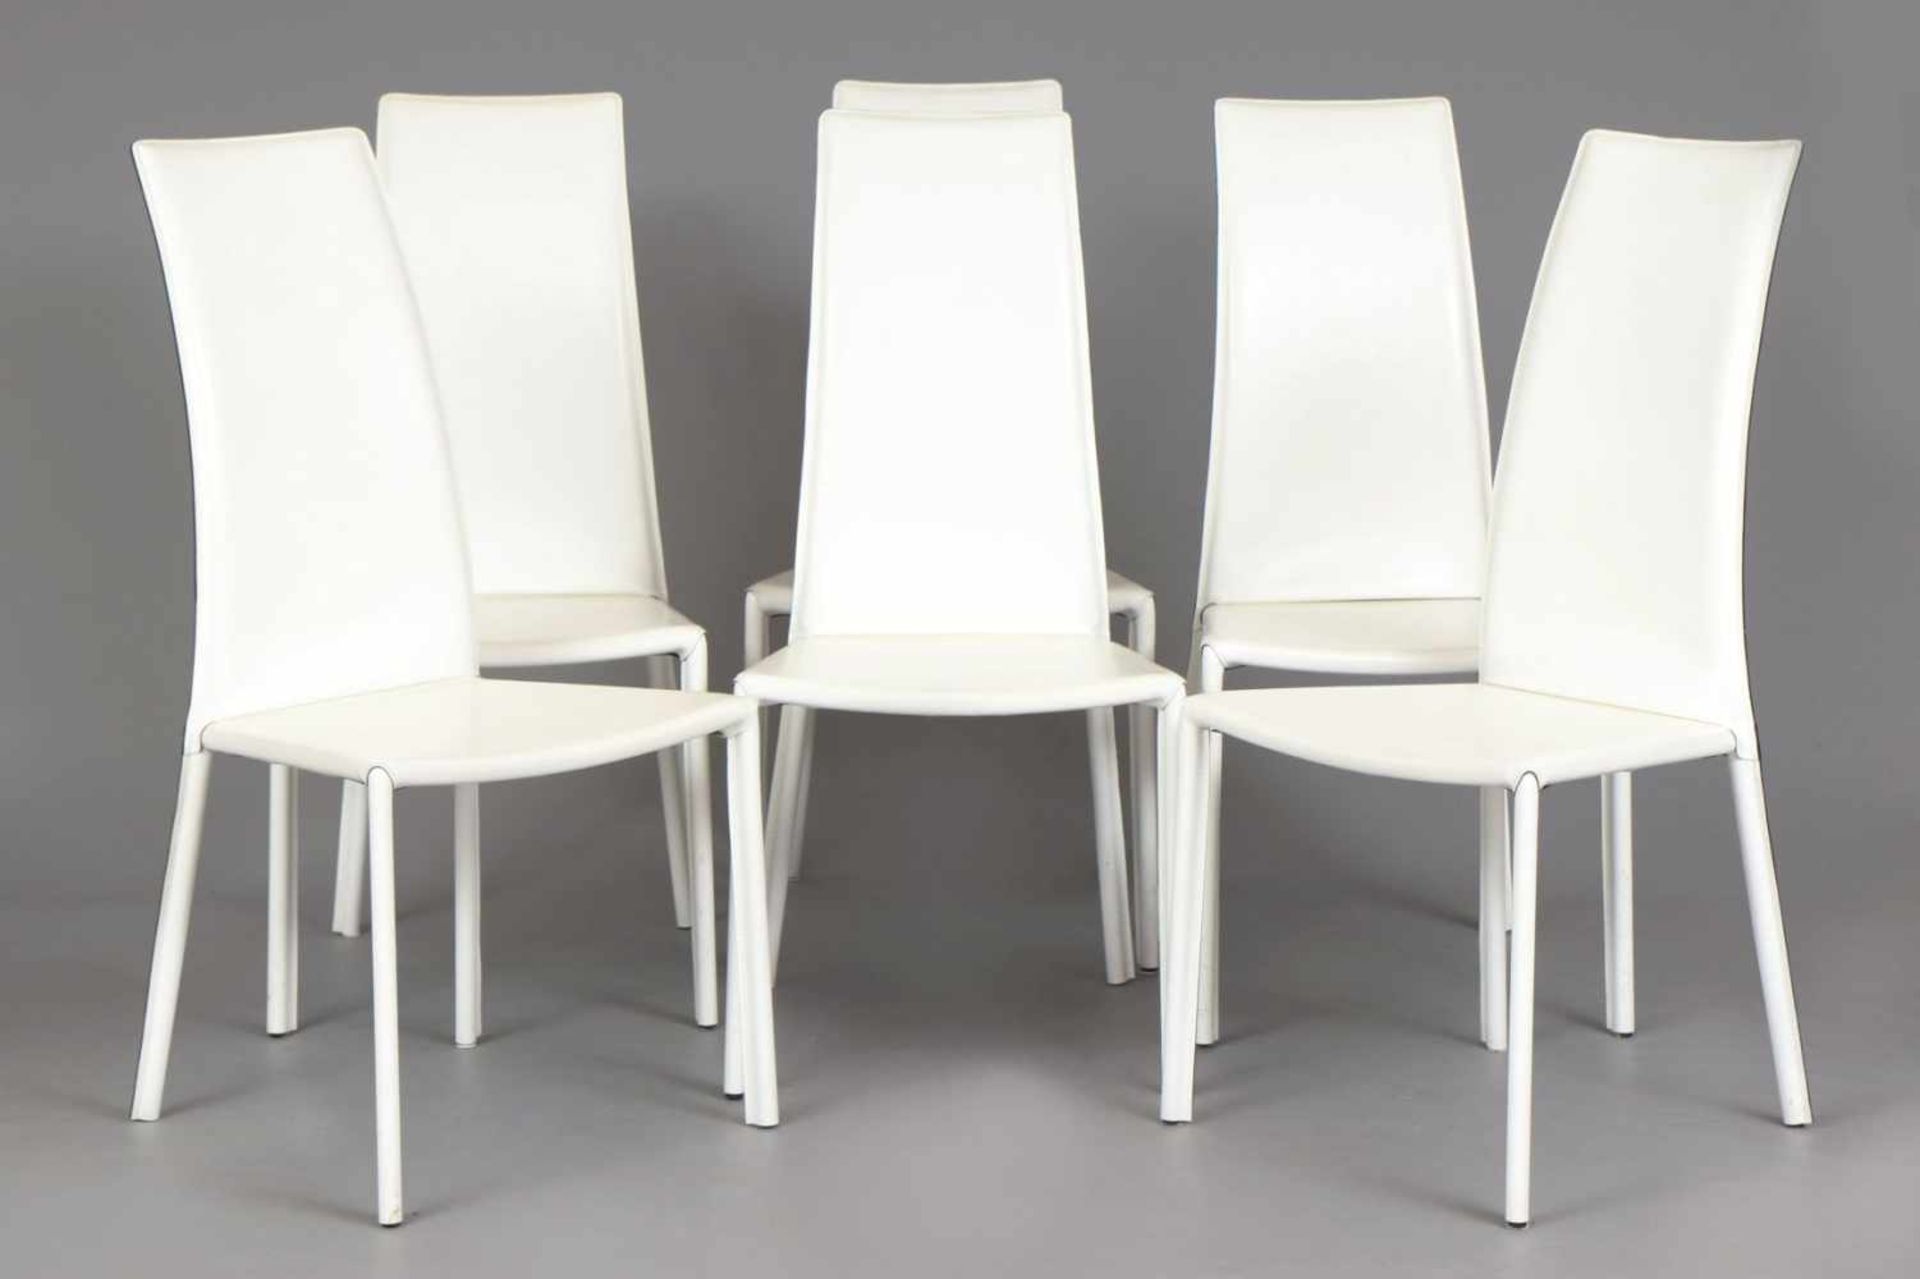 6 TRABALDO ITALIA Stühle weiß beledert, Hochlehner, eckige Sitzfläche, H 105cm, B 50cm, T 40cm, nur - Bild 2 aus 4